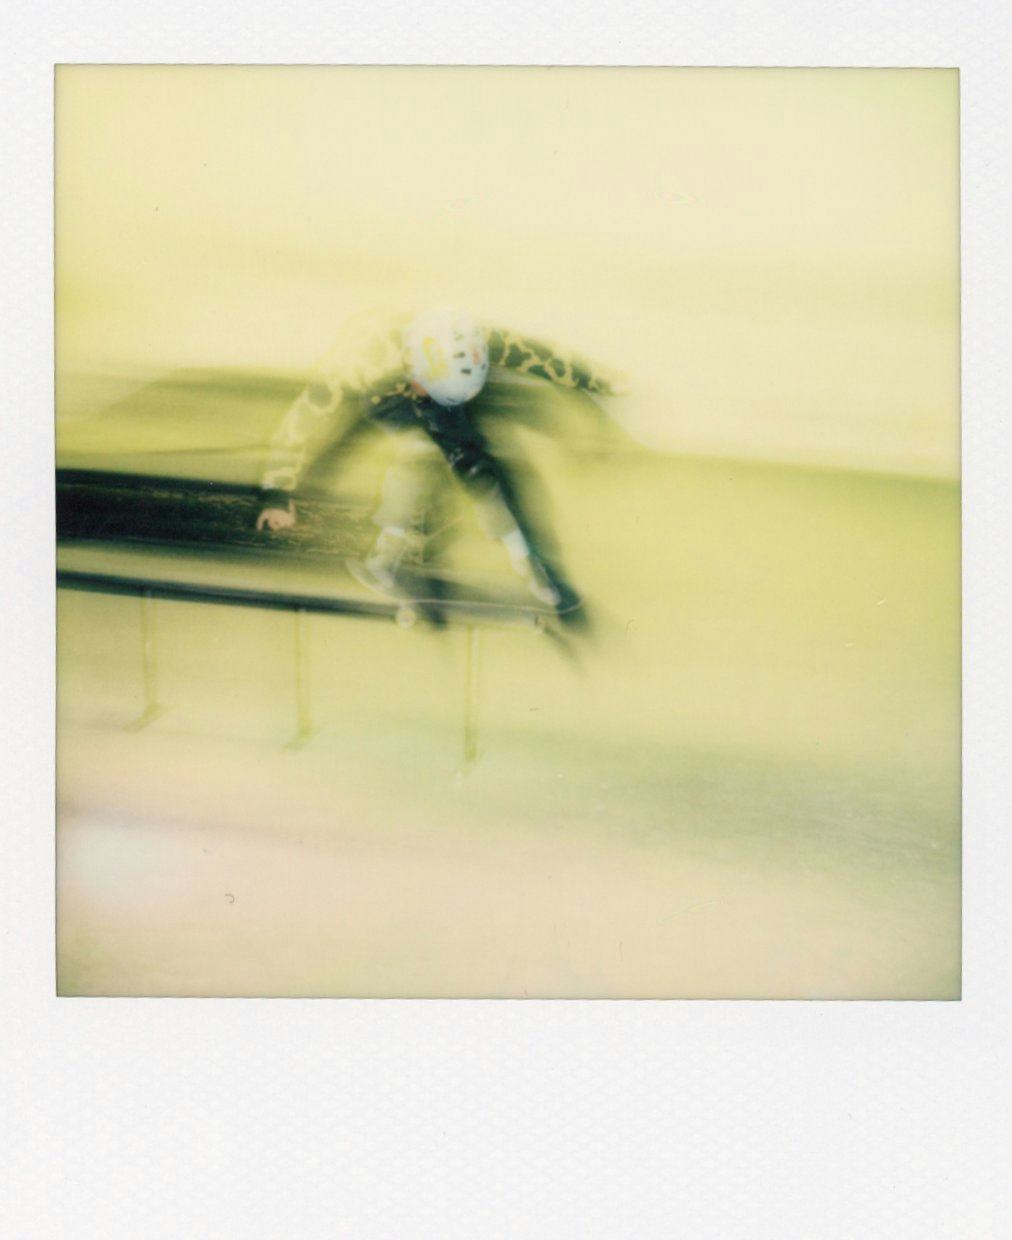 Polaroid of skater